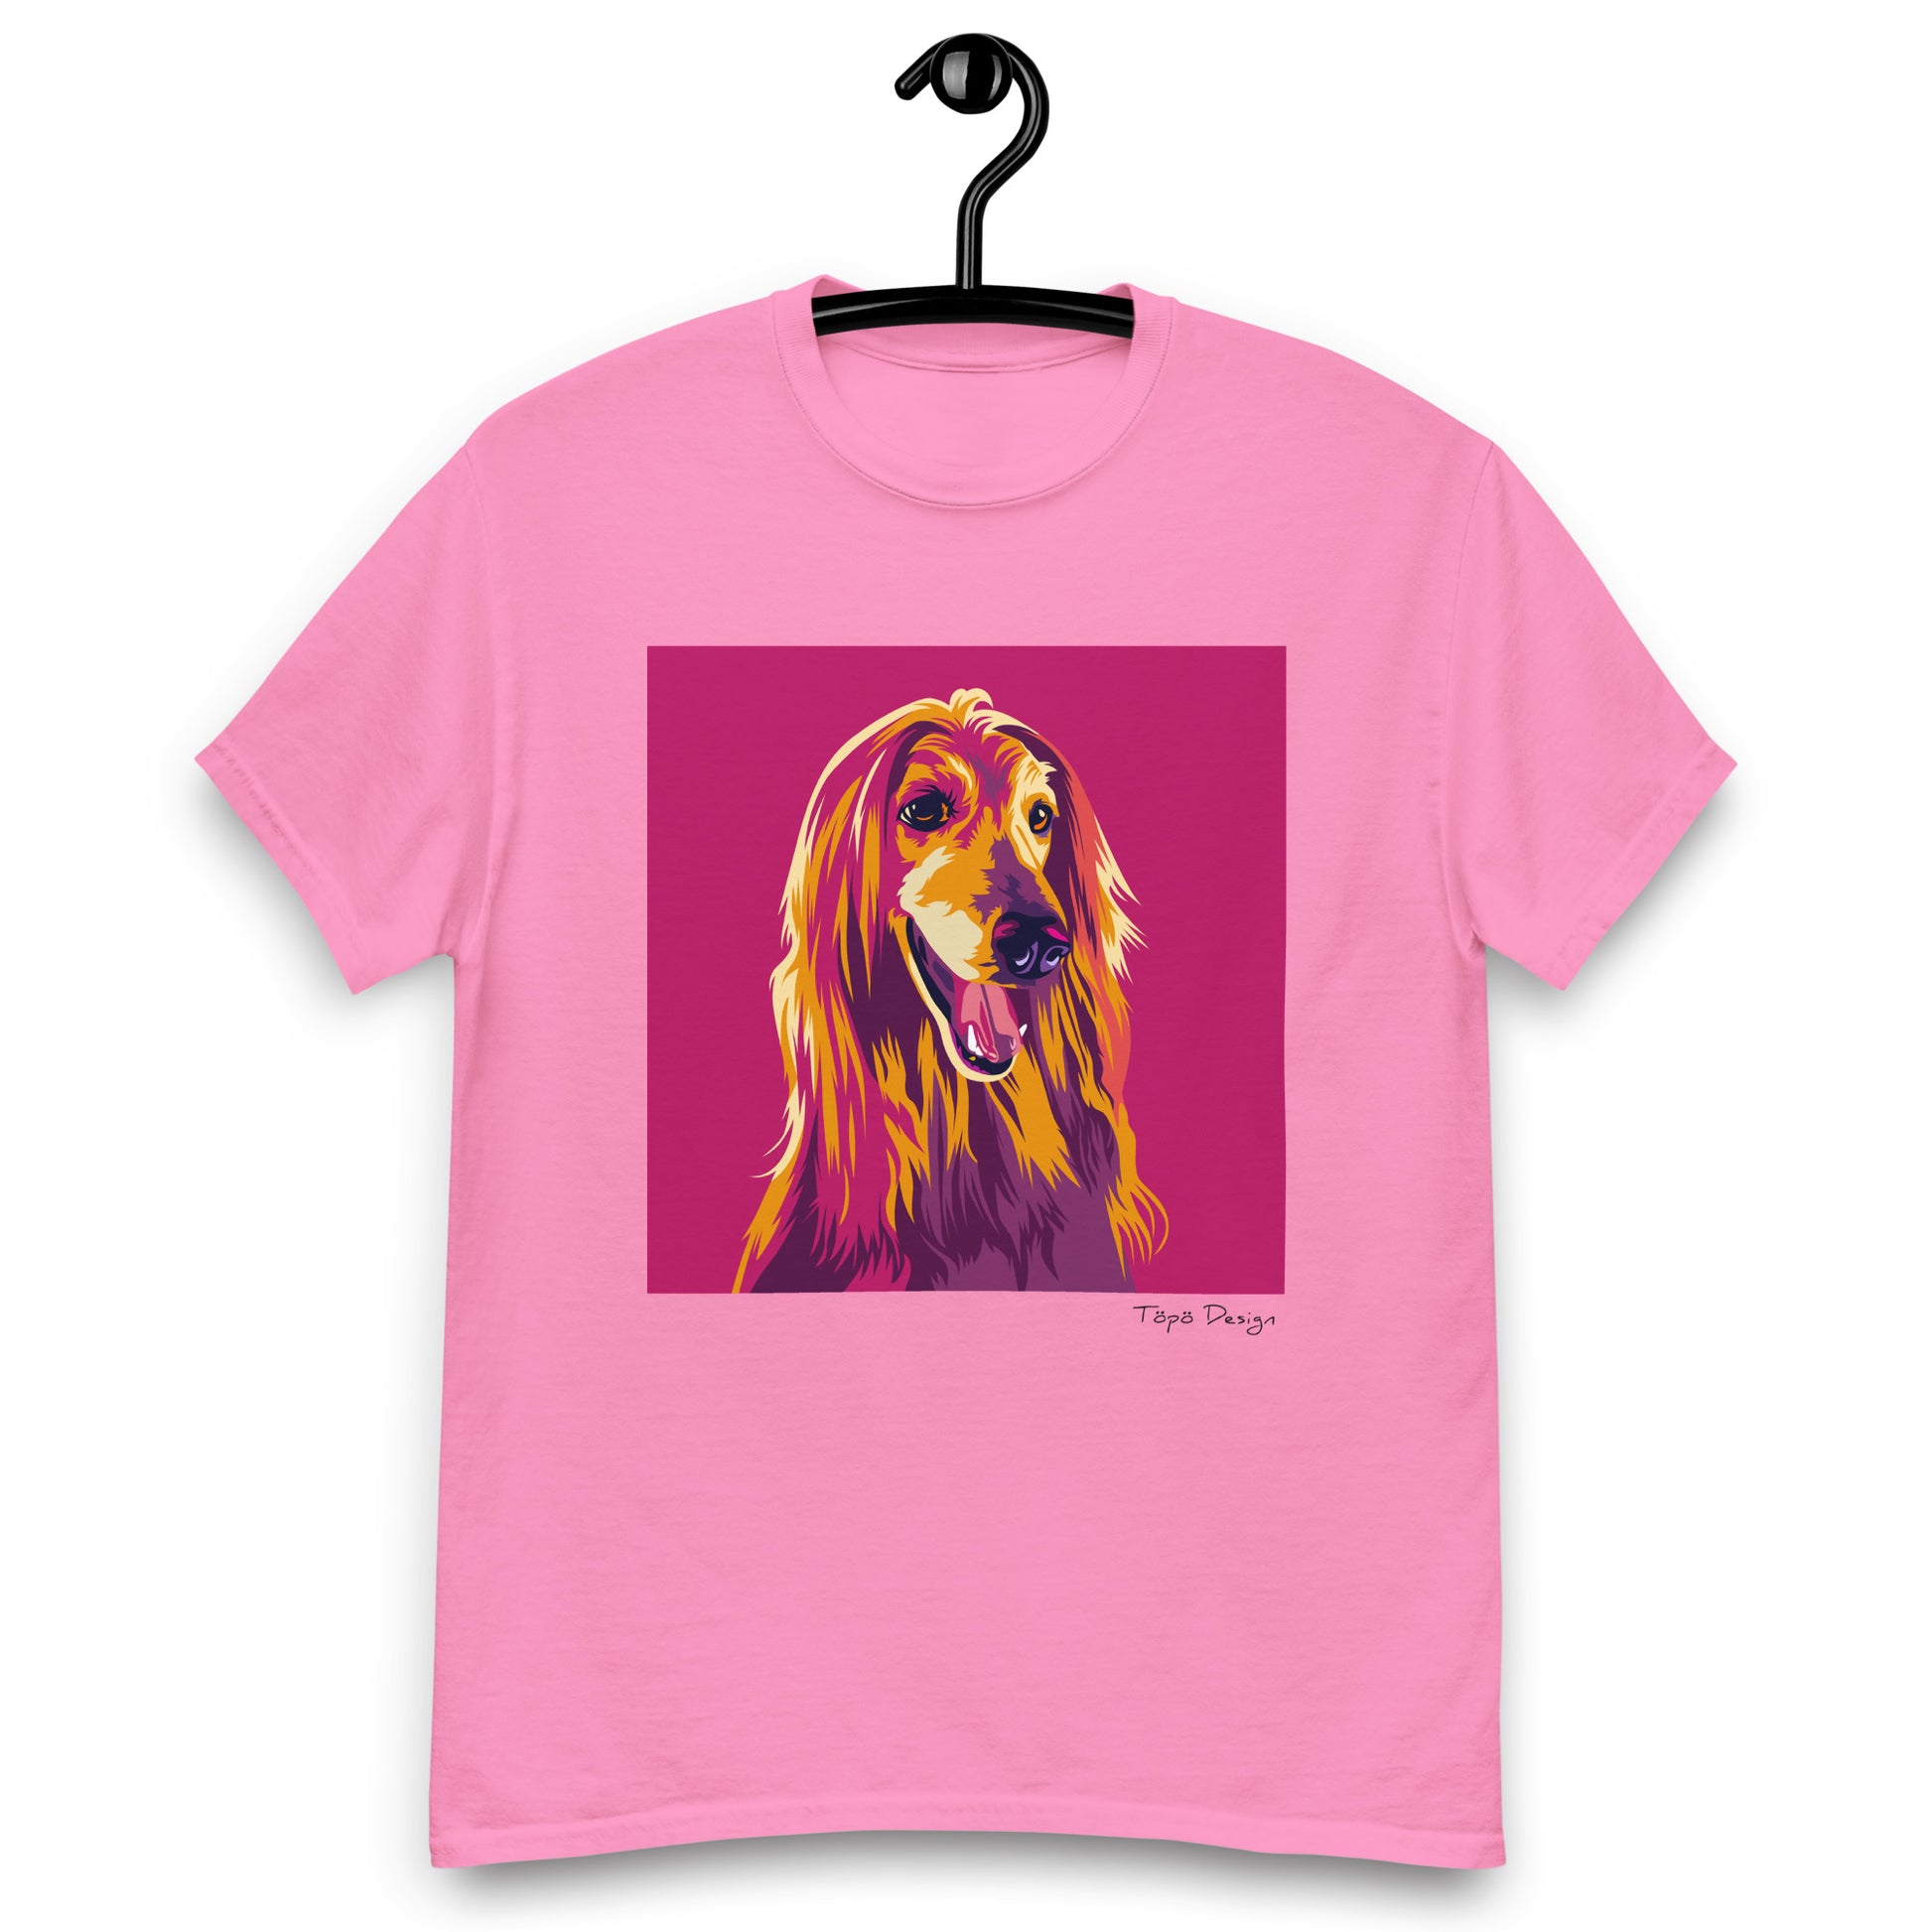 Vaaleanpunainen T-paita. T-paidassa on Pop Art printti afgaaninvinttikoirasta. Printin taustaväri on pinkki. 